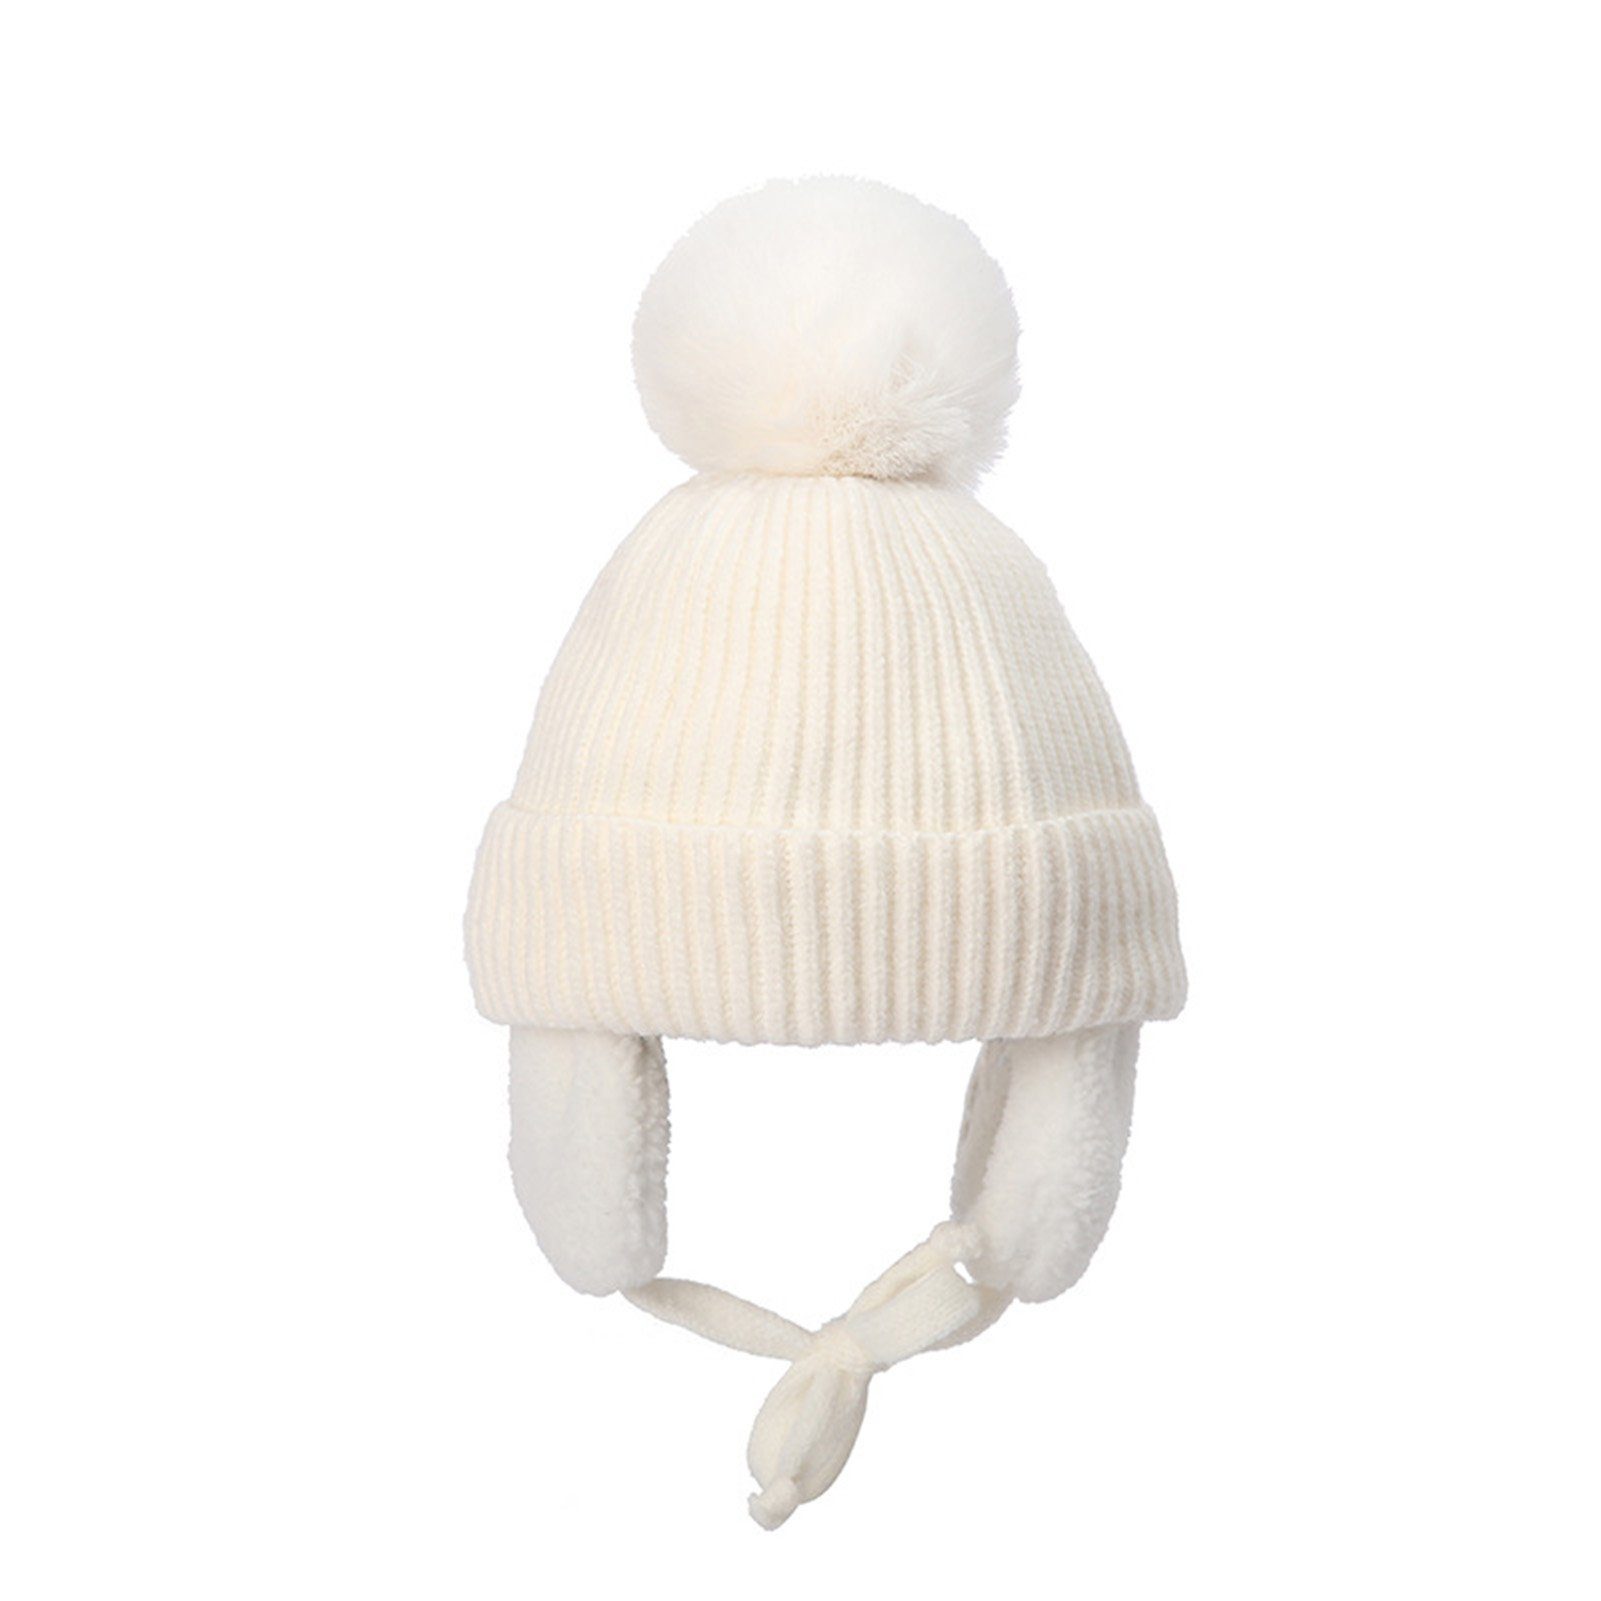 Rutaqian Strickmütze Baby wintermütze Stricken Hut Verdicken Ohrenschützer Hut für Kinder (Kinder Wintermütze für Mädchen Jungen 2-8 Jahre) mit Fleece gefüttert Weiß